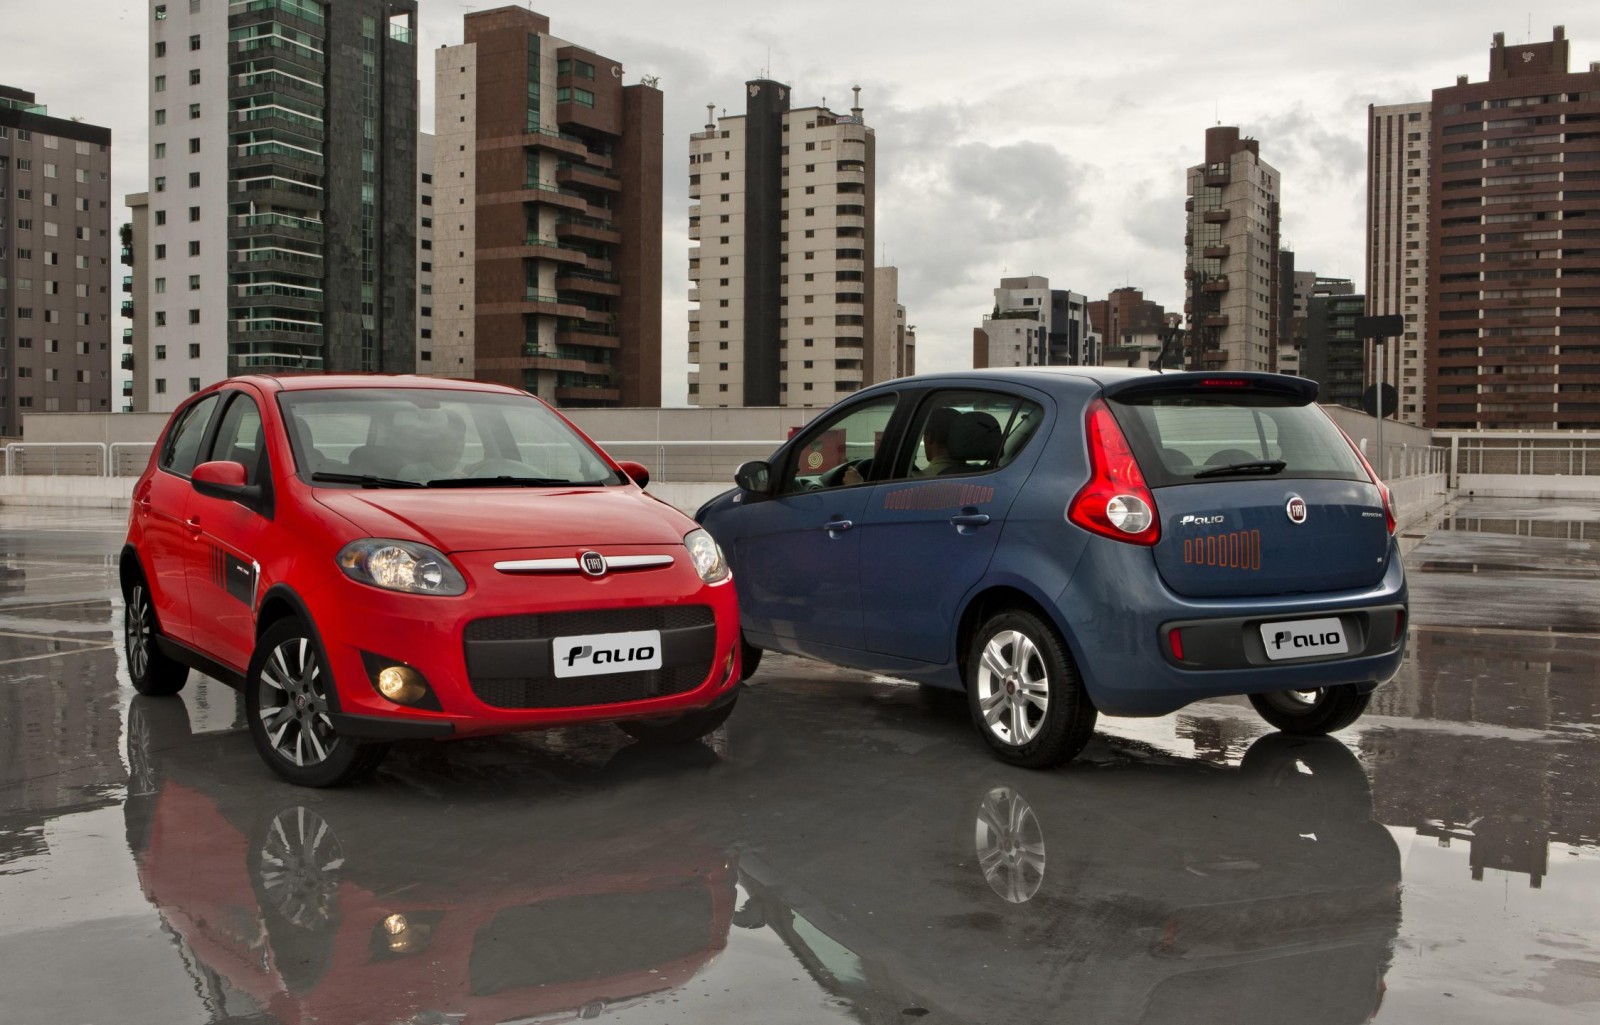 Conheça as diferenças entre os mercados de carro da Argentina e do Brasil -  Motor Show